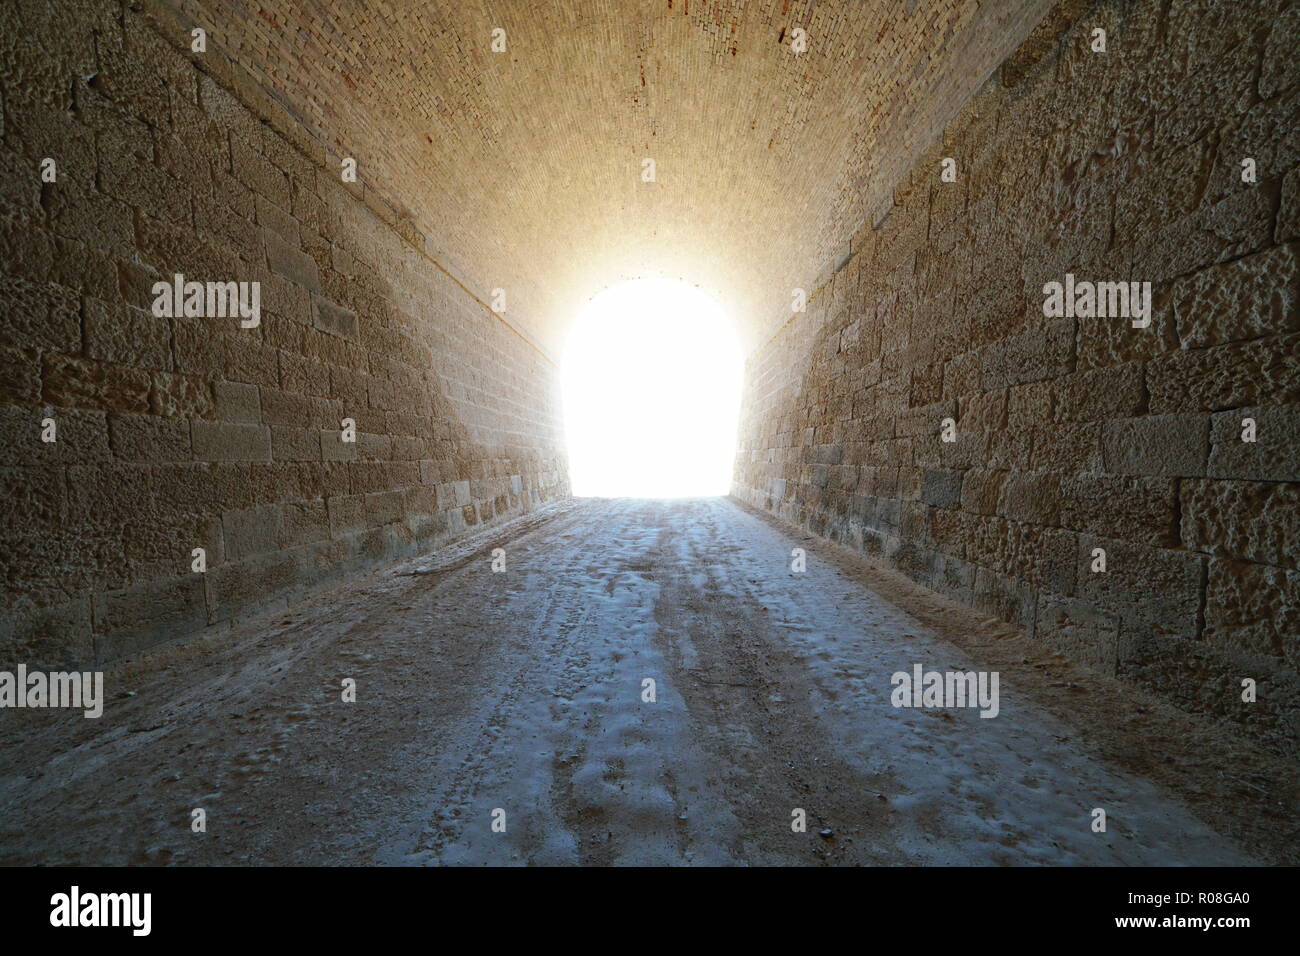 Innerhalb eines Tunnels mit hellen Licht am Ende, natürlichen Szene, L'Ametlla de Mar, Tarragona, Katalonien, Spanien Stockfoto